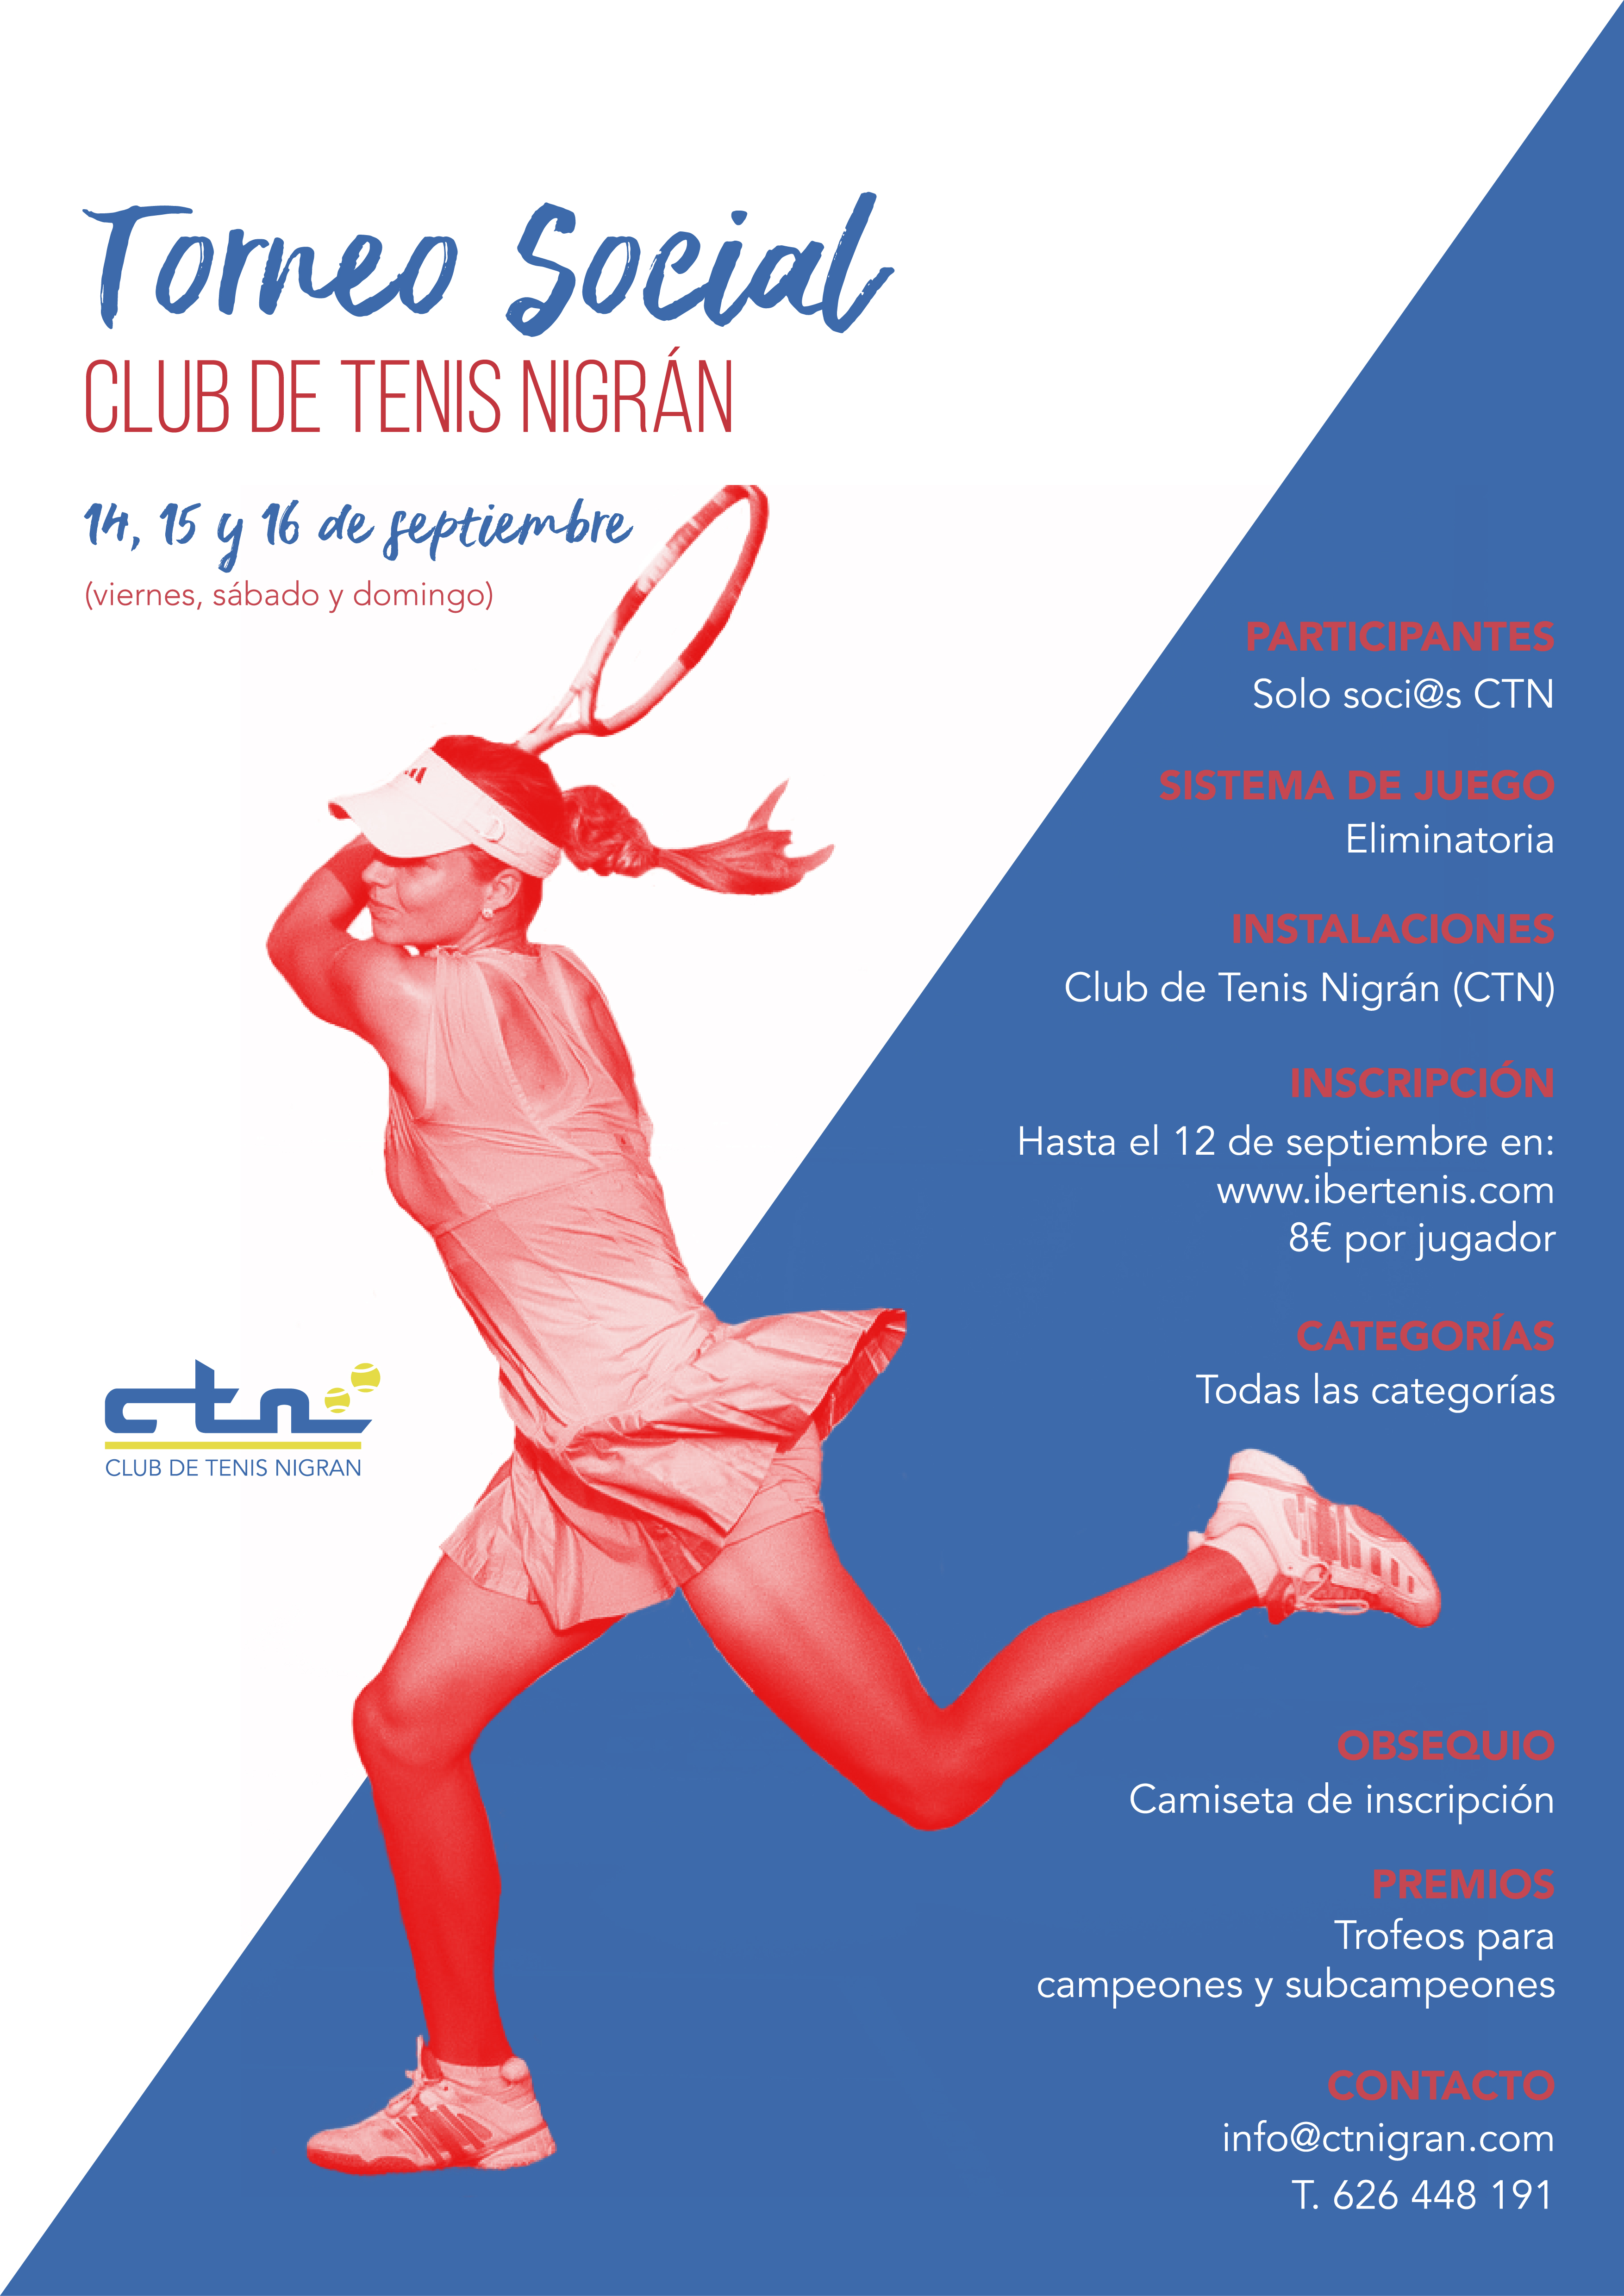 Cartel del Torneo Social Club de Tenis Nigrán